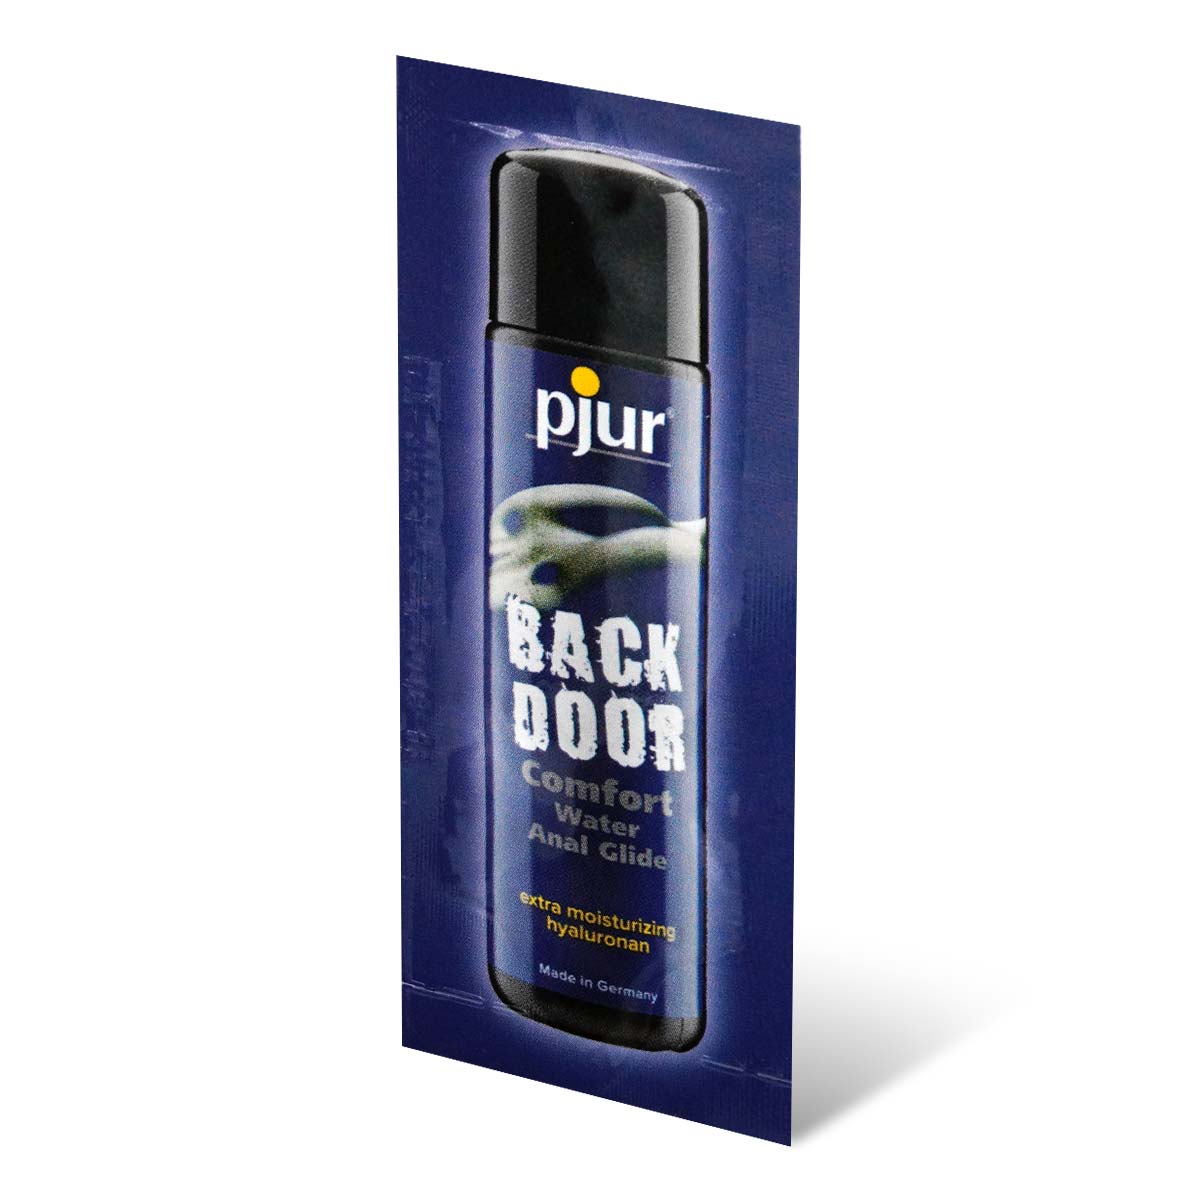 pjur ピュア バックドア コンフォート ウォーター アナル 潤滑剤 2ml 水性潤滑ゼリー-p_1